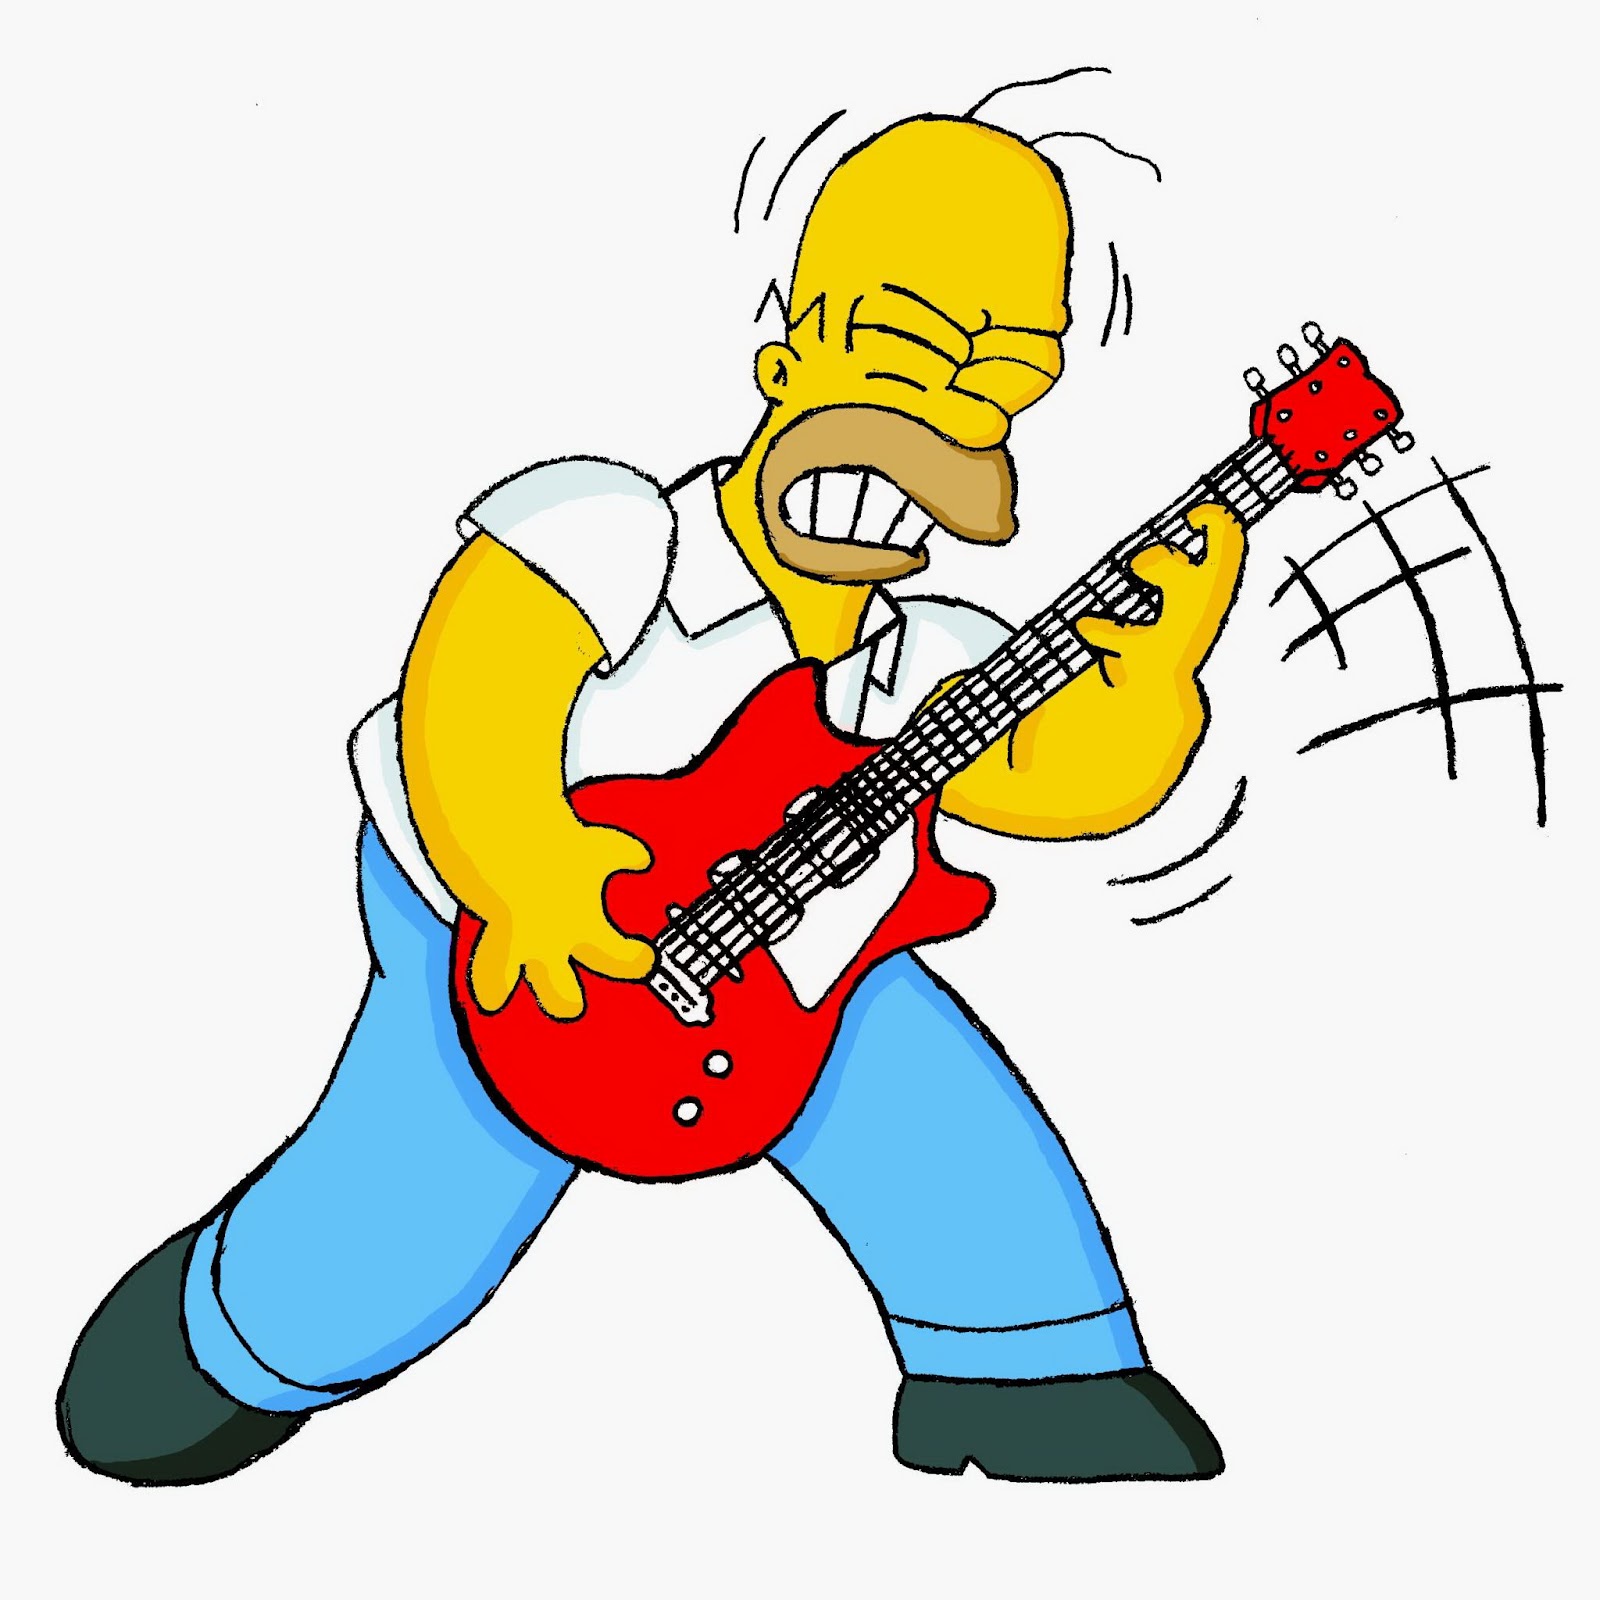 Homer rockero